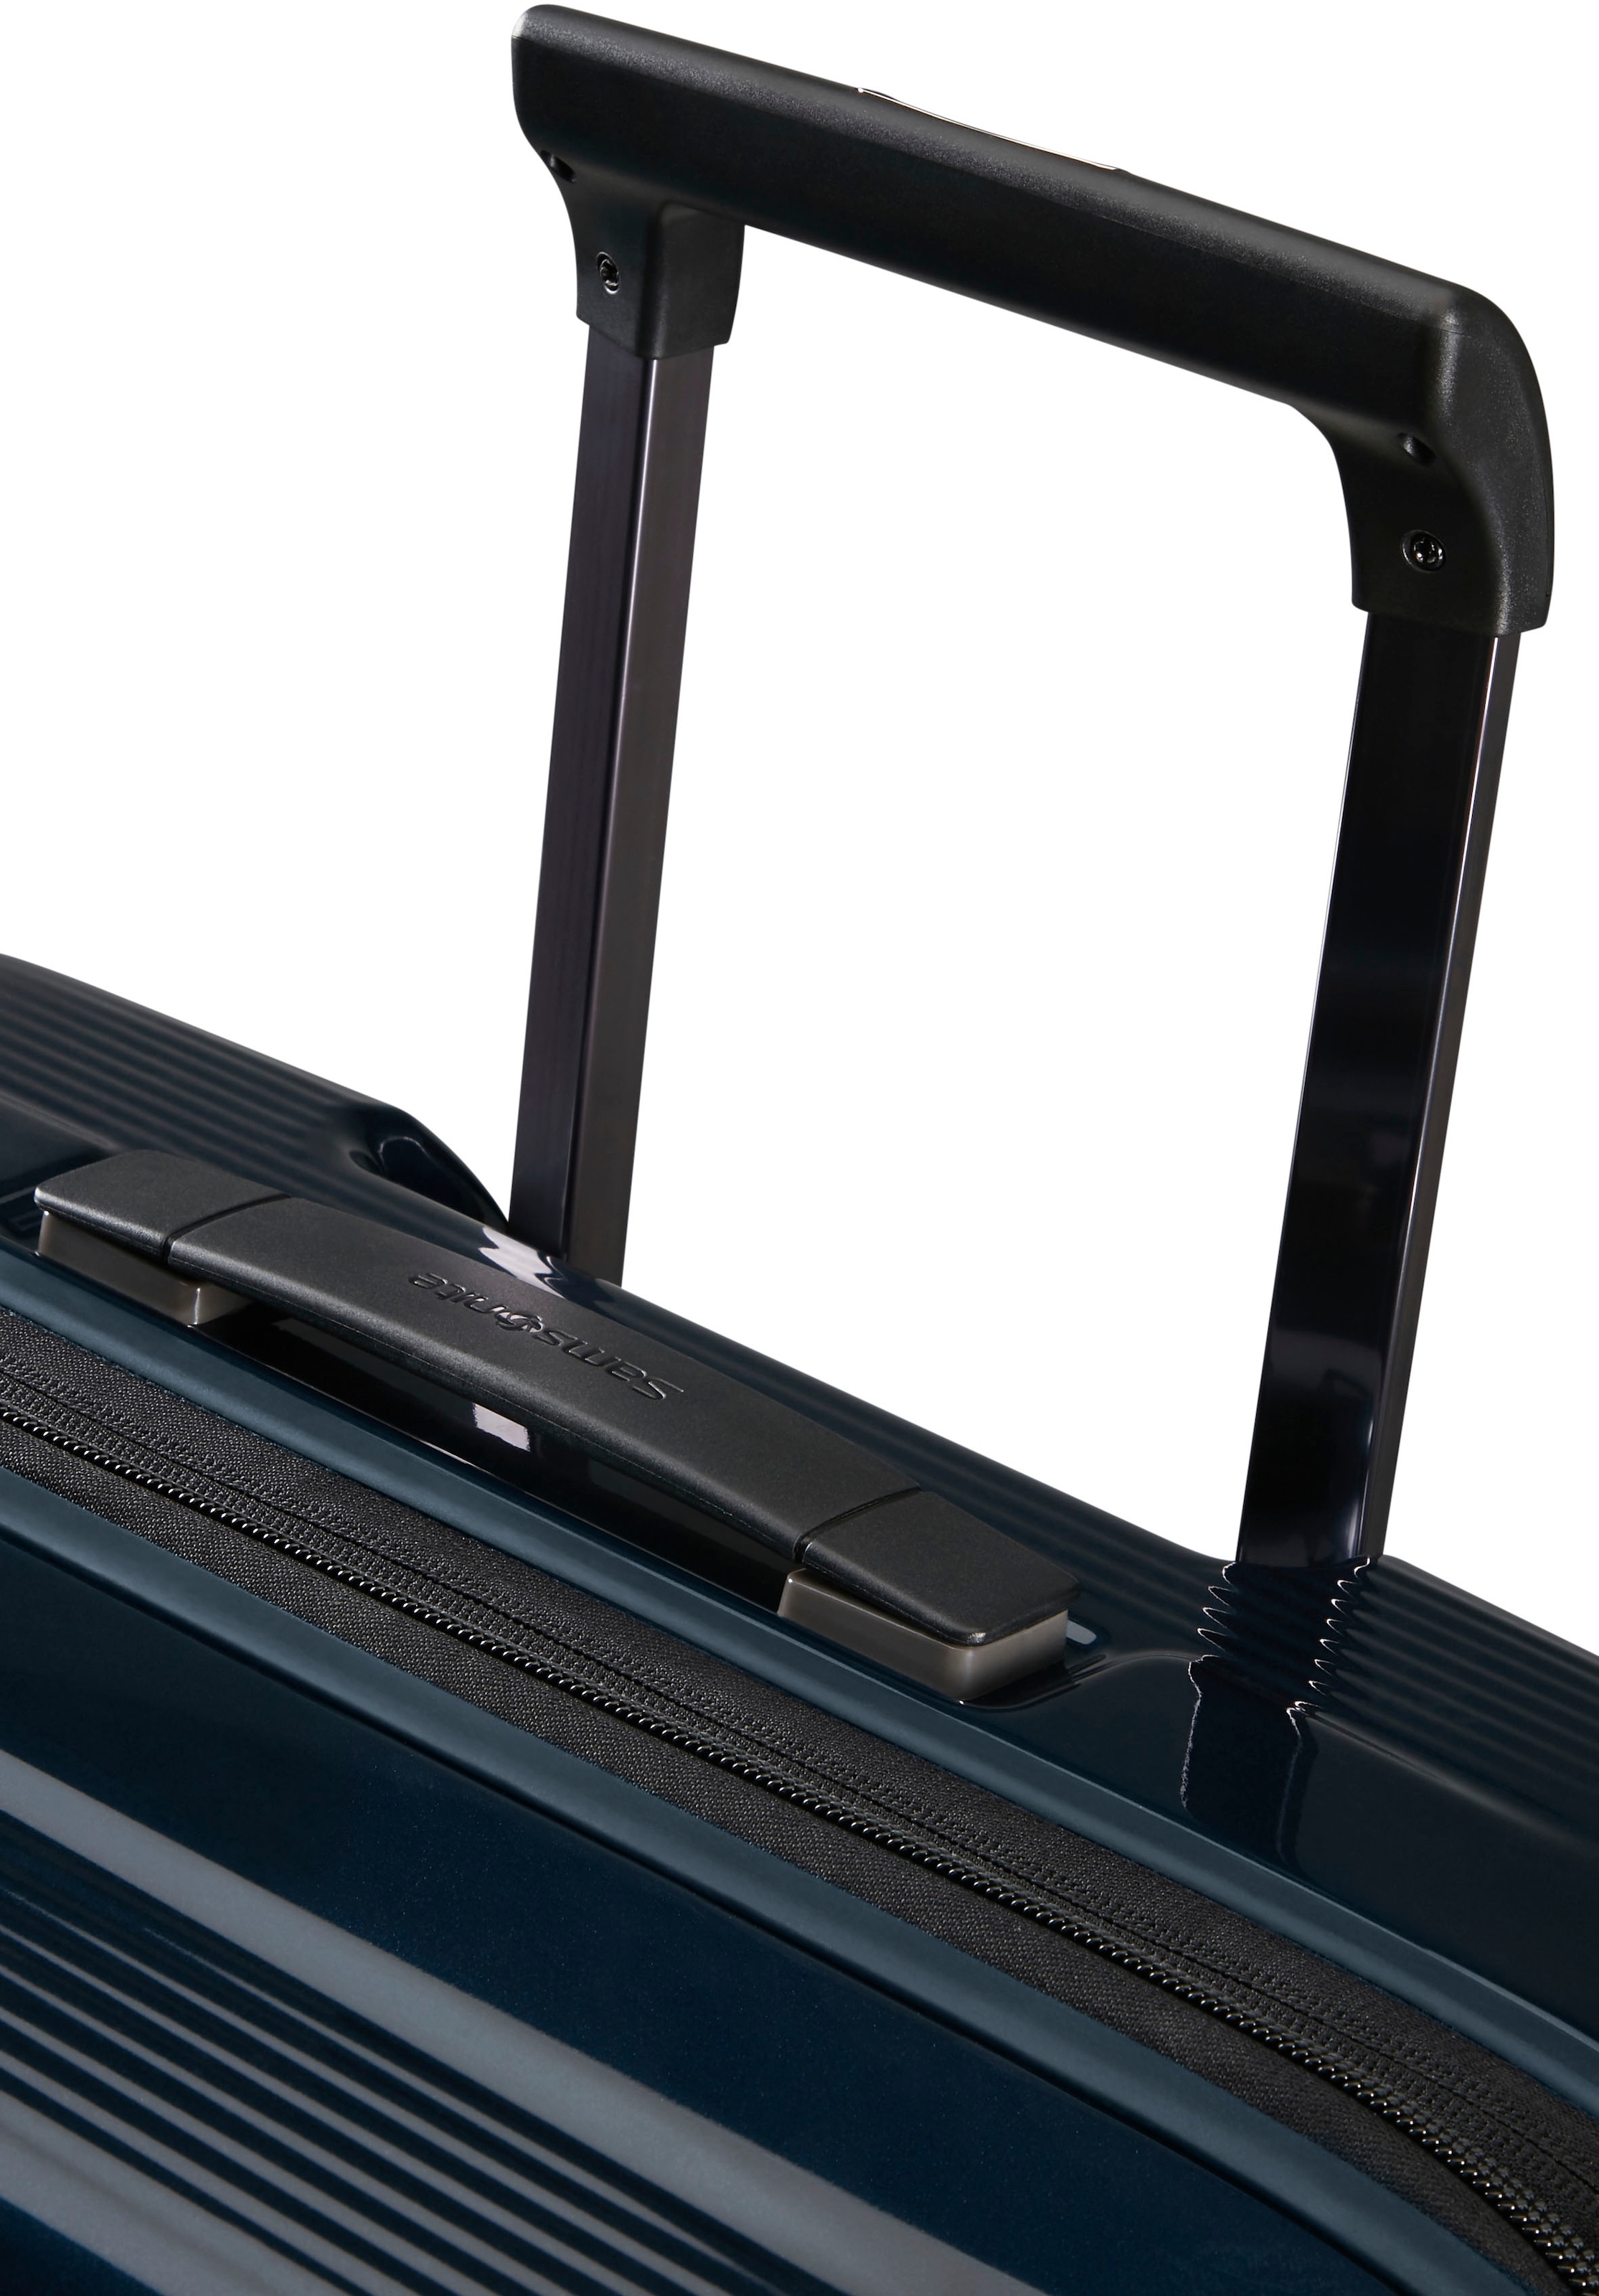 Samsonite Koffer »NUON 75«, 4 Rollen, geräumiger Koffer, Trend Reisegepäck Reisekoffer TSA-Zahlenschloss